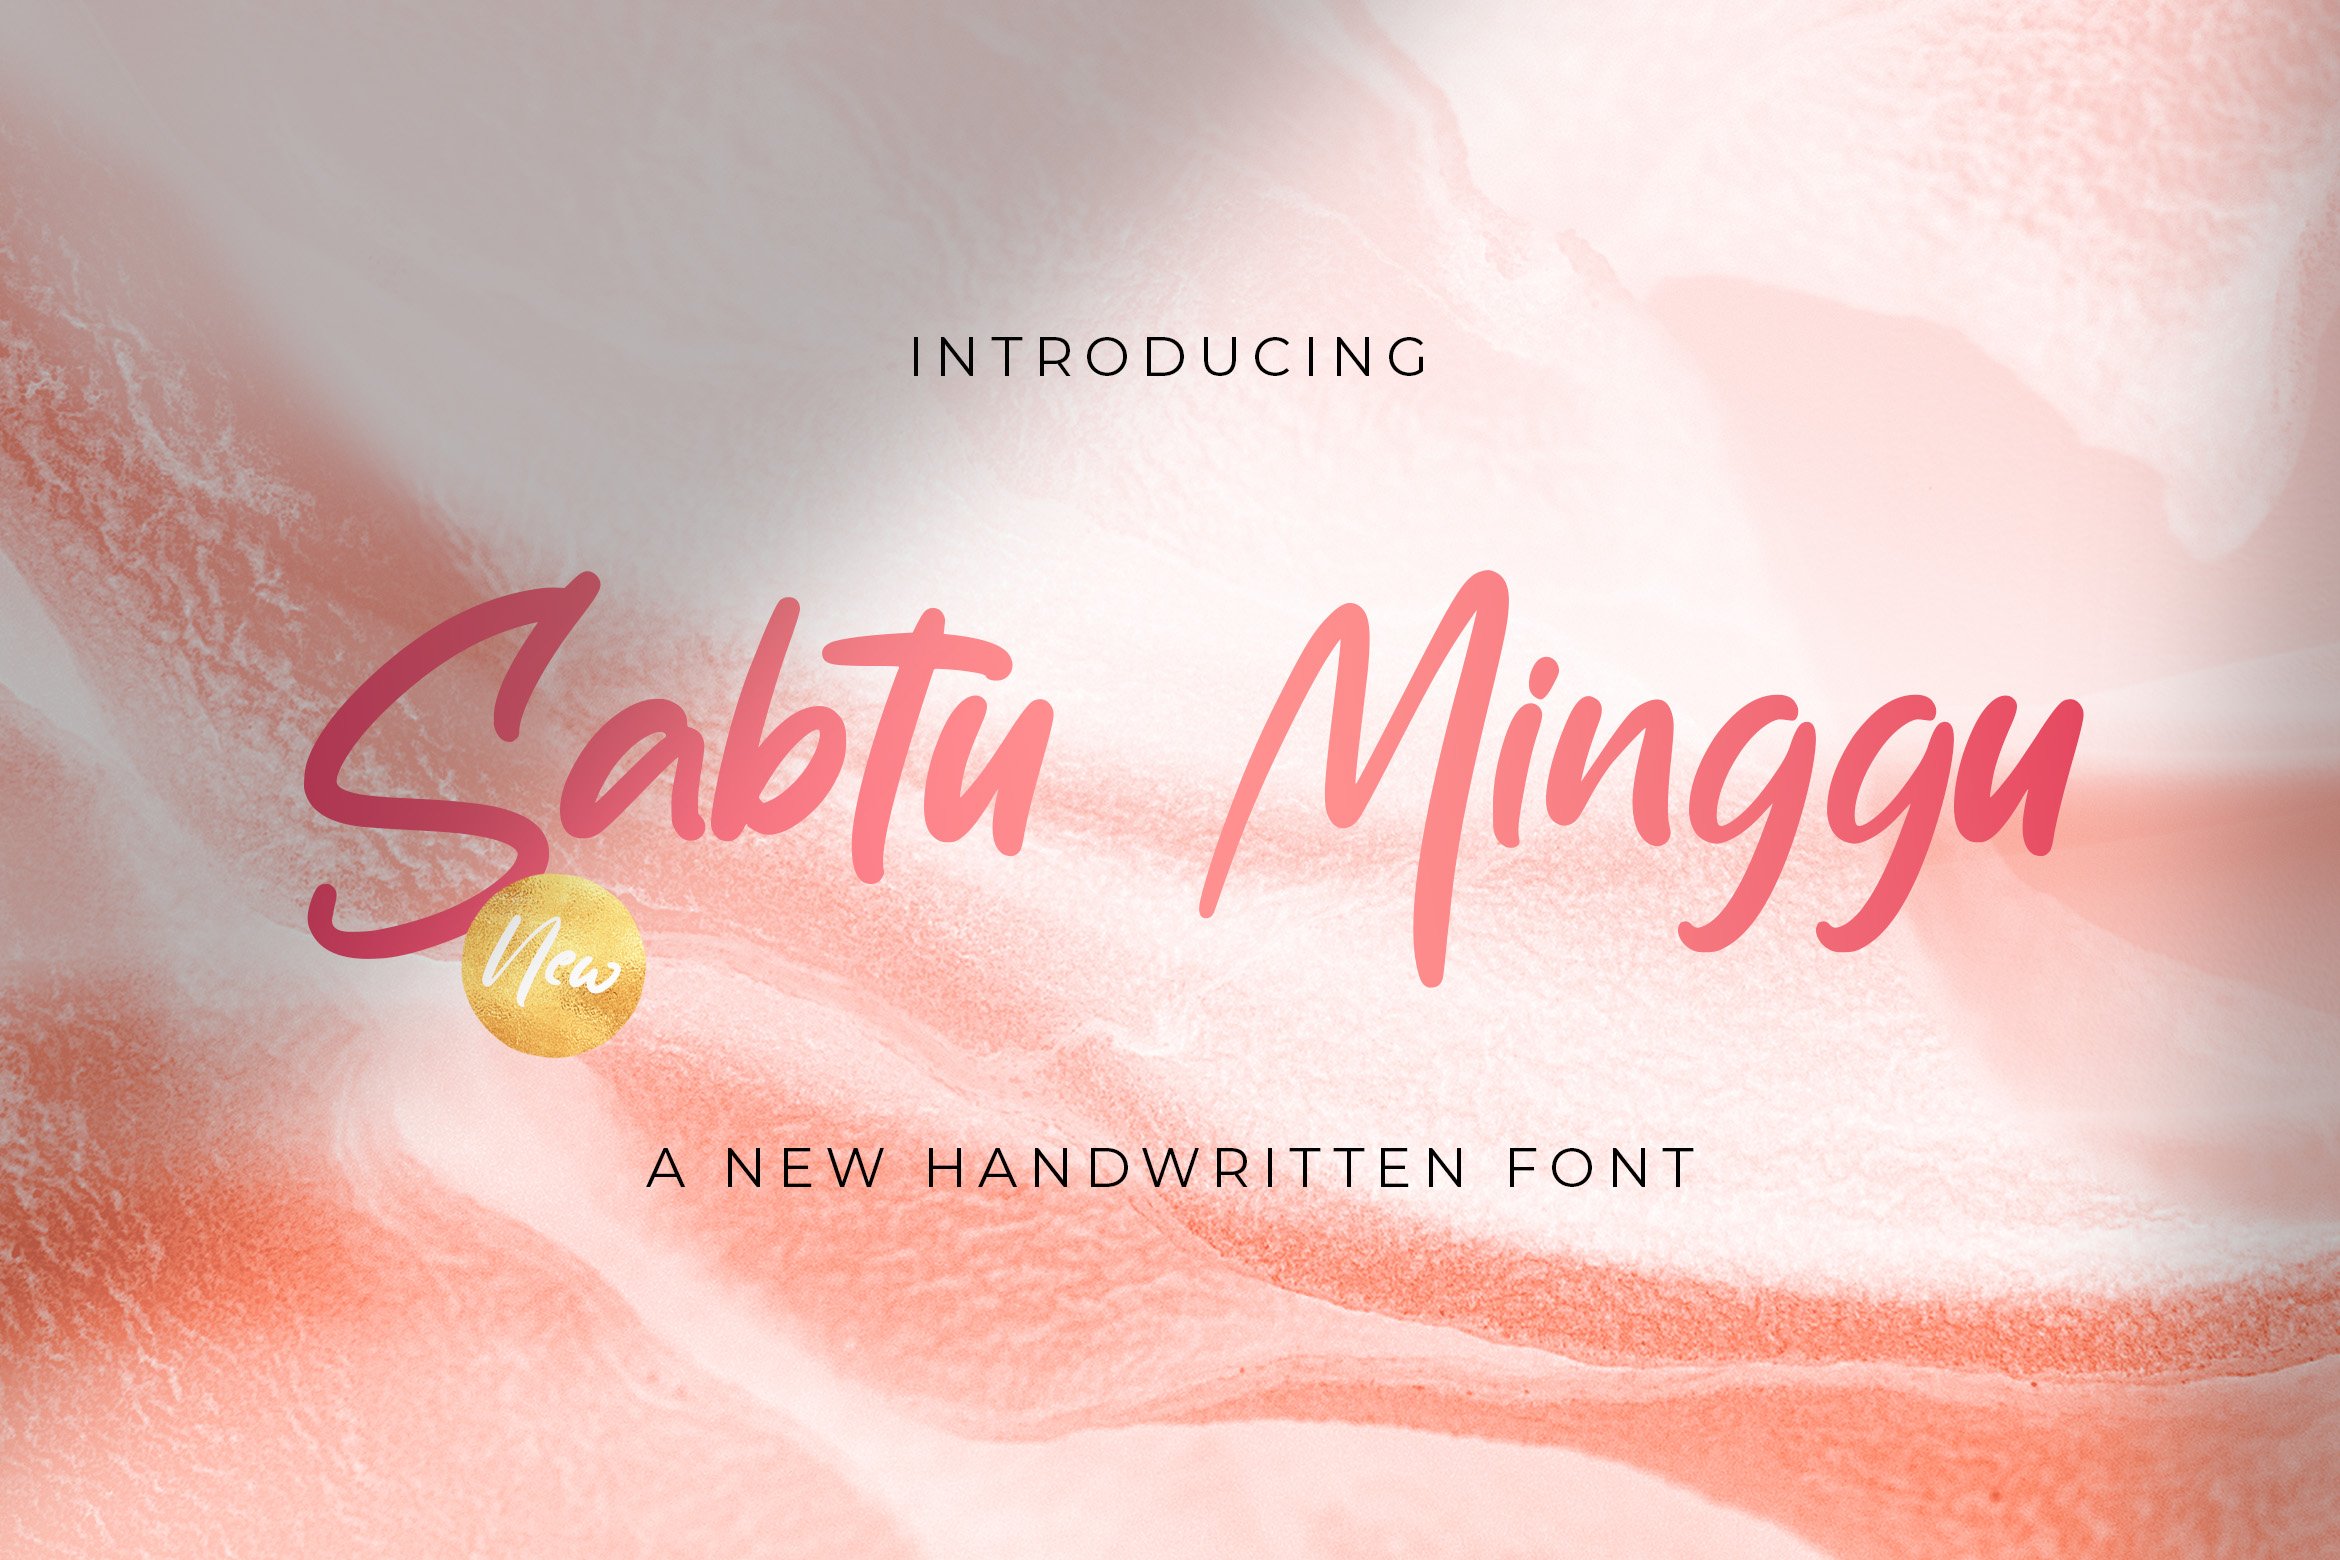 Sabtu Minggu - Handwritten Font cover image.